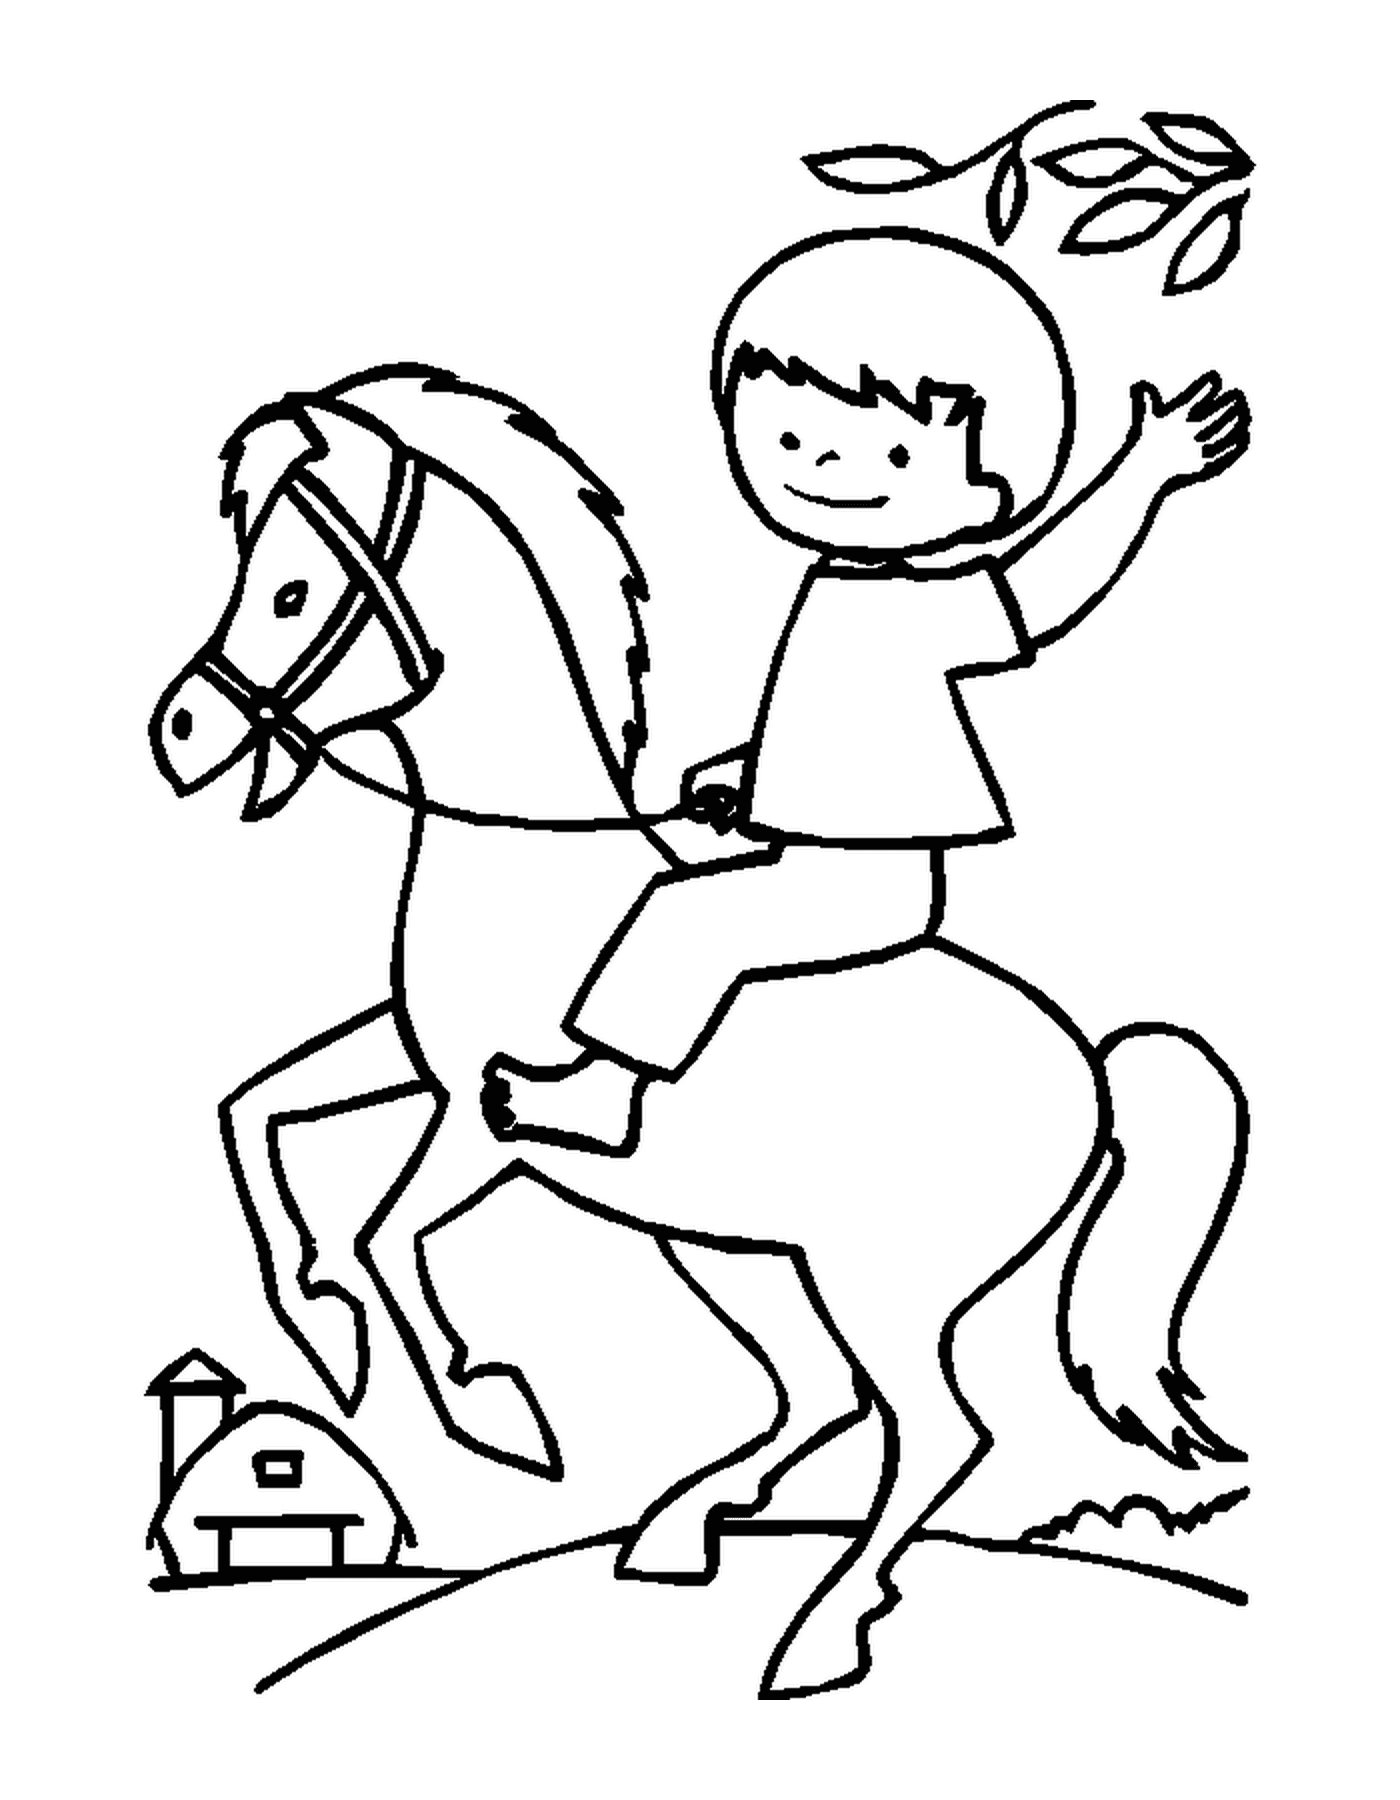  Ребёнок на коне счастливо держит бразды правления 